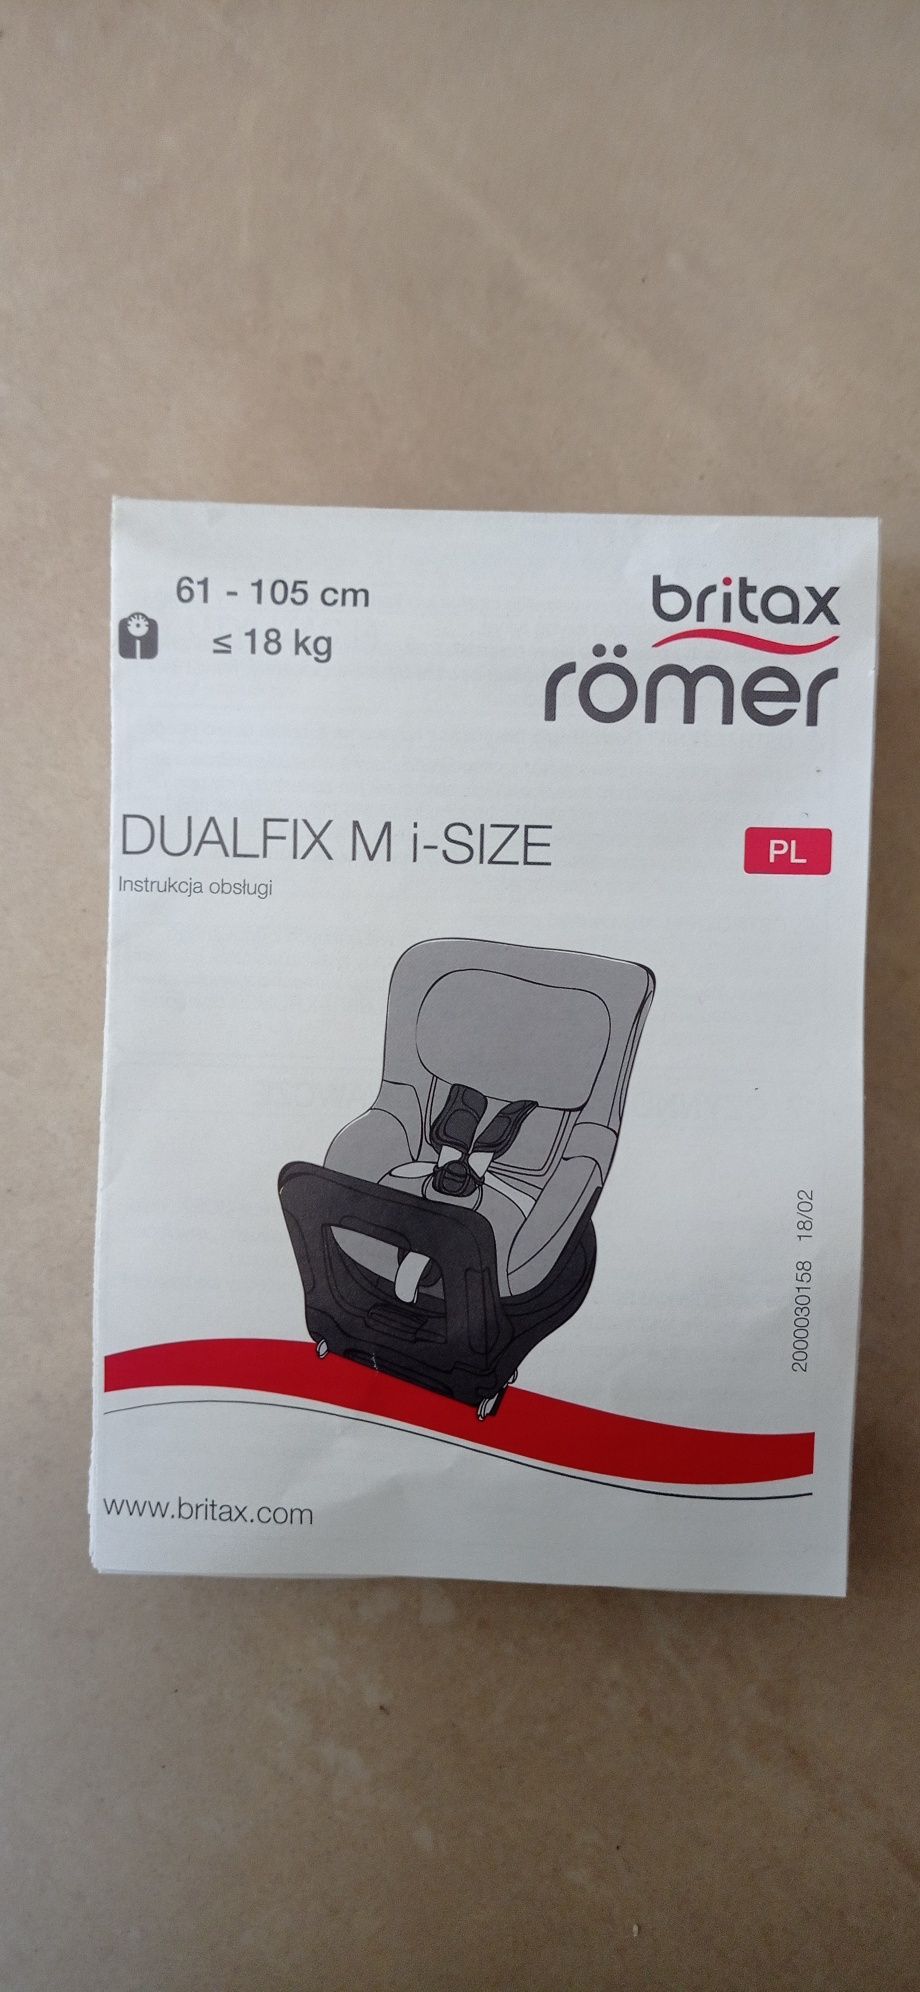 Britax romer dualfix m i-size